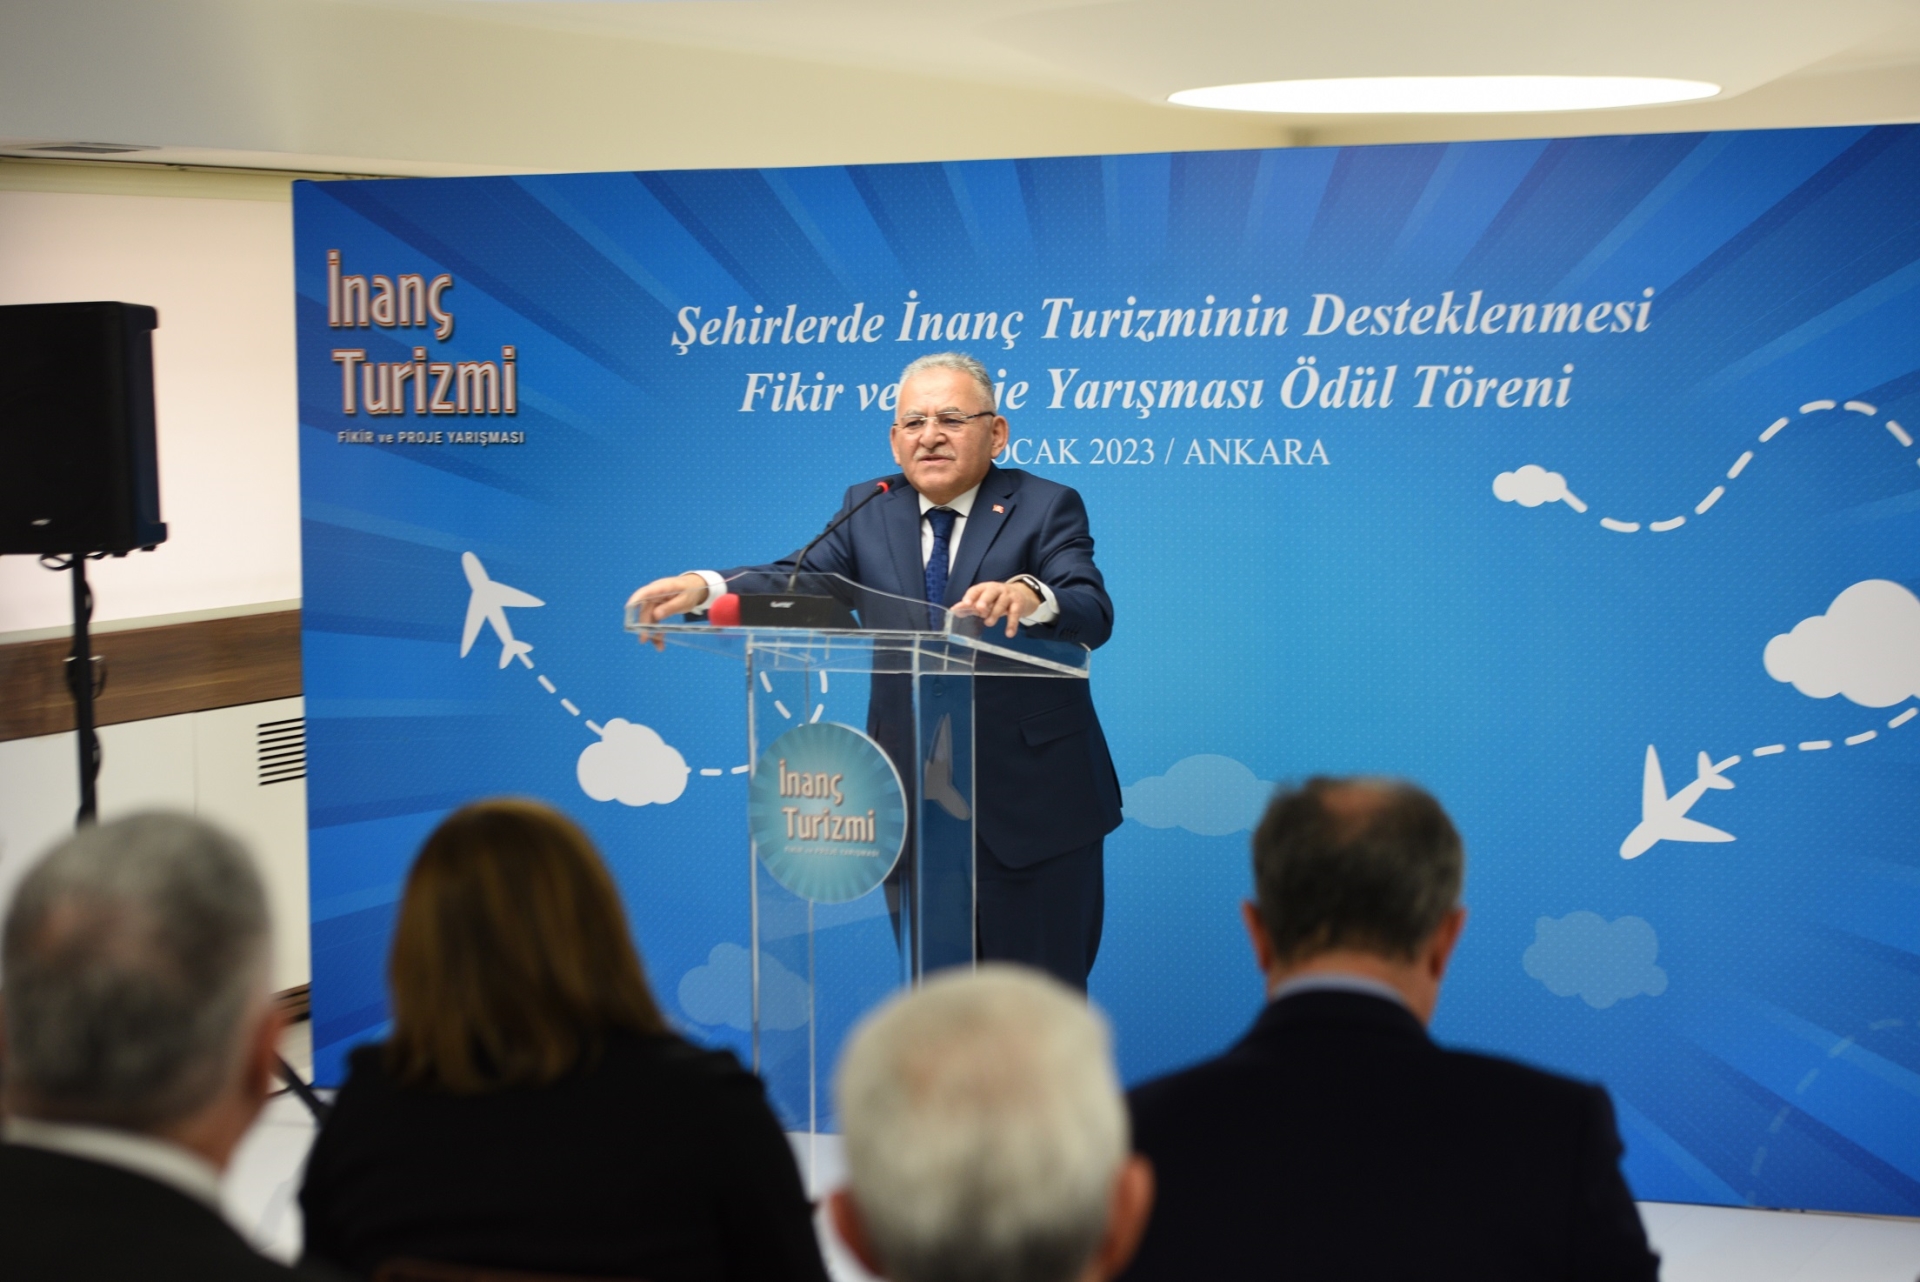 Ankara’dan Ödül Alan Büyükkılıç: “Kayseri İnanç Turizmi Açısından Çok Önemli Bir Şehir”